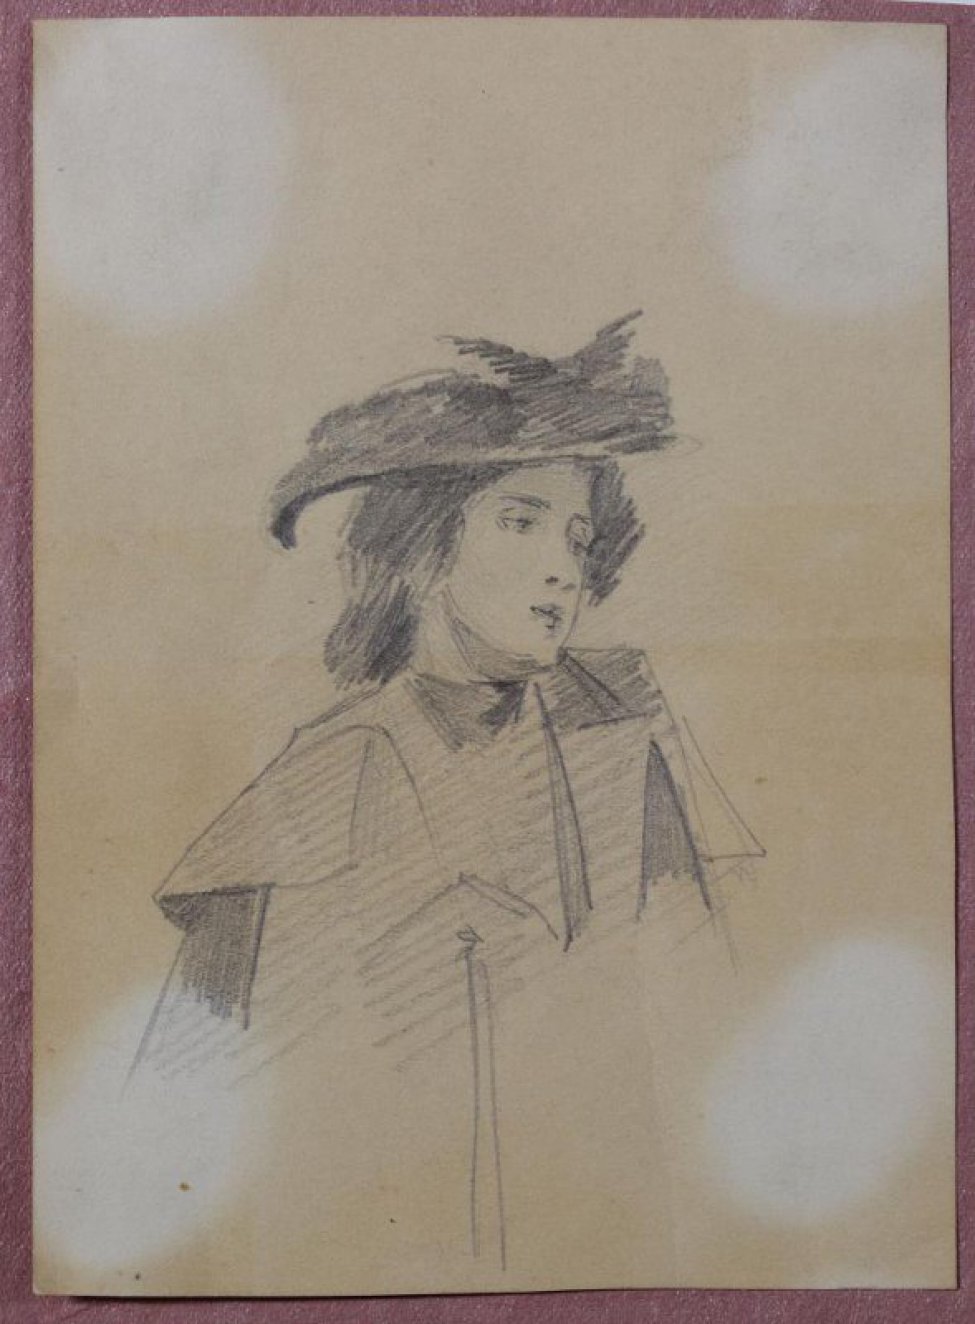 Изображена молодая женщина погрудно, в полоборота вправо, в пальто. Волосы собраны низко на затылке узлом. На голове - шляпа с полями.